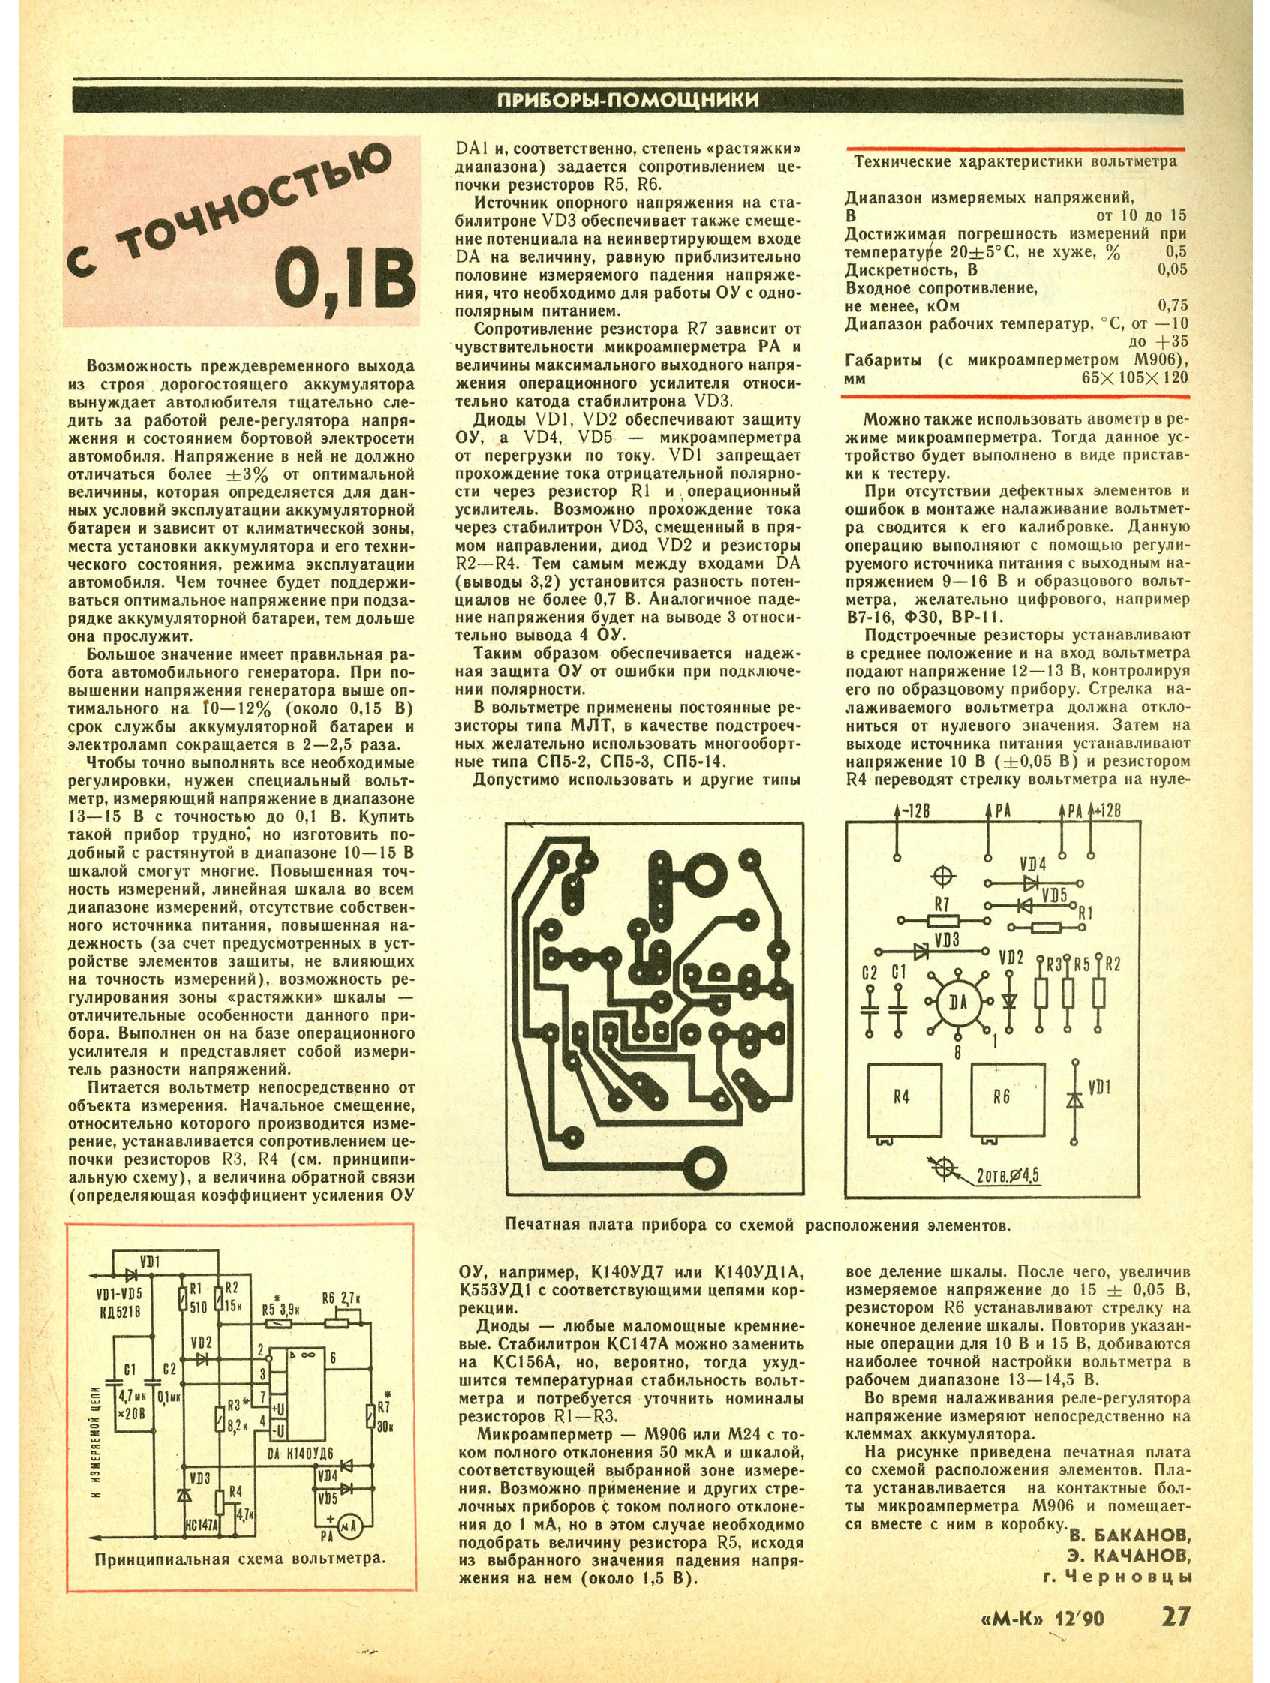 МК 12, 1990, 27 c.